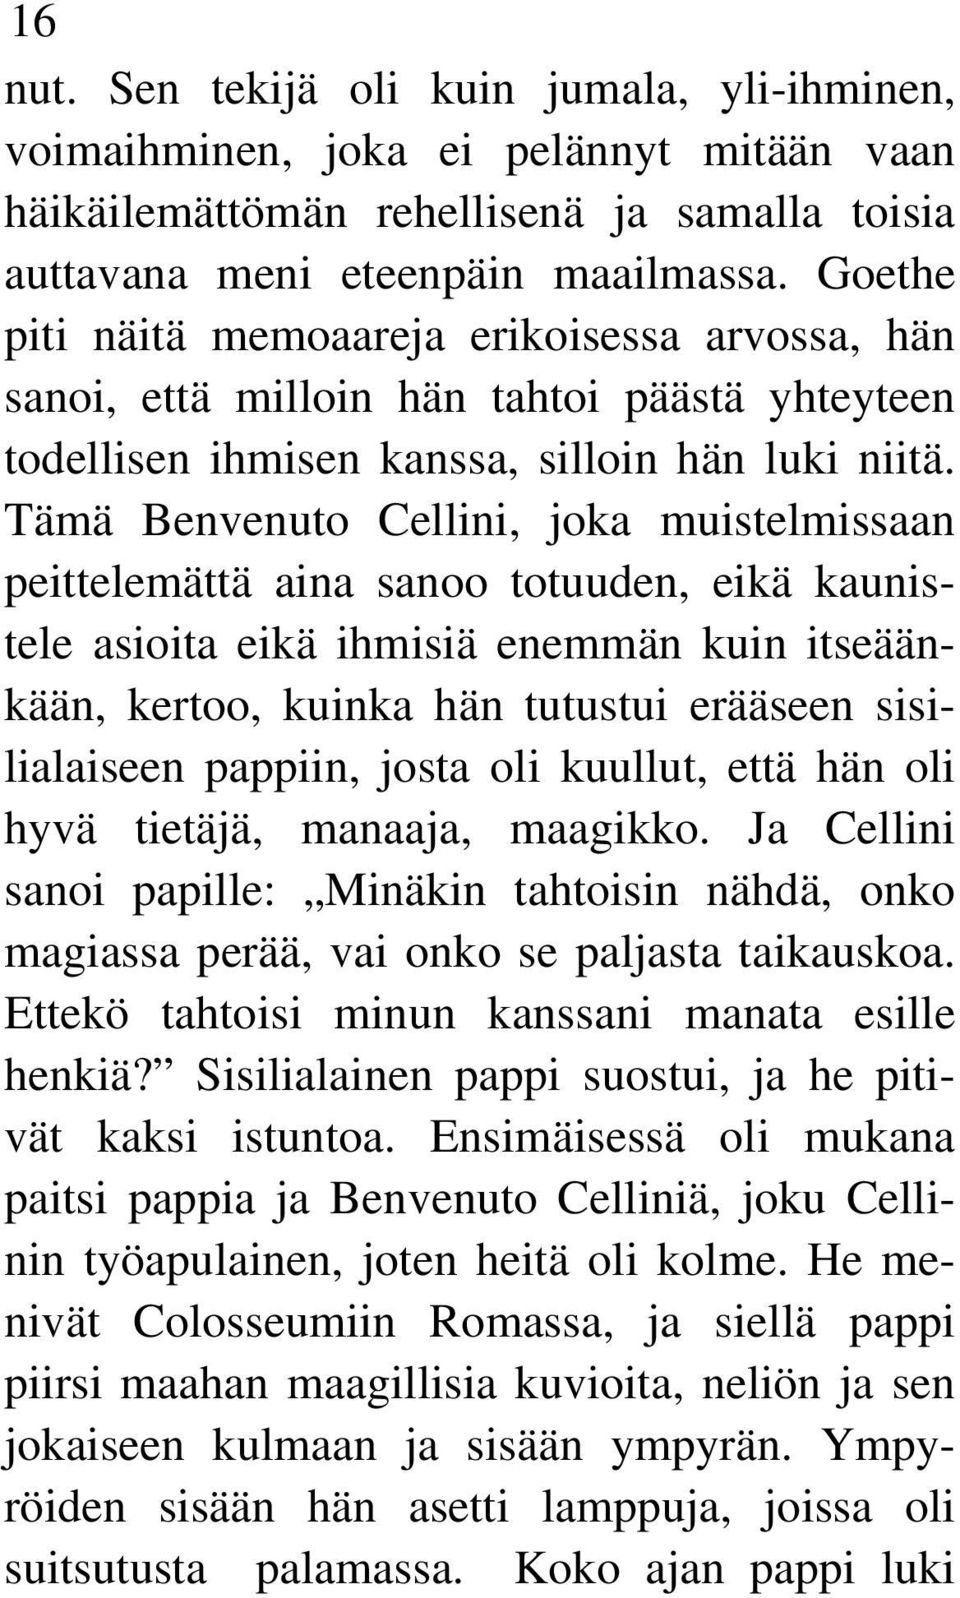 Tämä Benvenuto Cellini, joka muistelmissaan peittelemättä aina sanoo totuuden, eikä kaunistele asioita eikä ihmisiä enemmän kuin itseäänkään, kertoo, kuinka hän tutustui erääseen sisilialaiseen